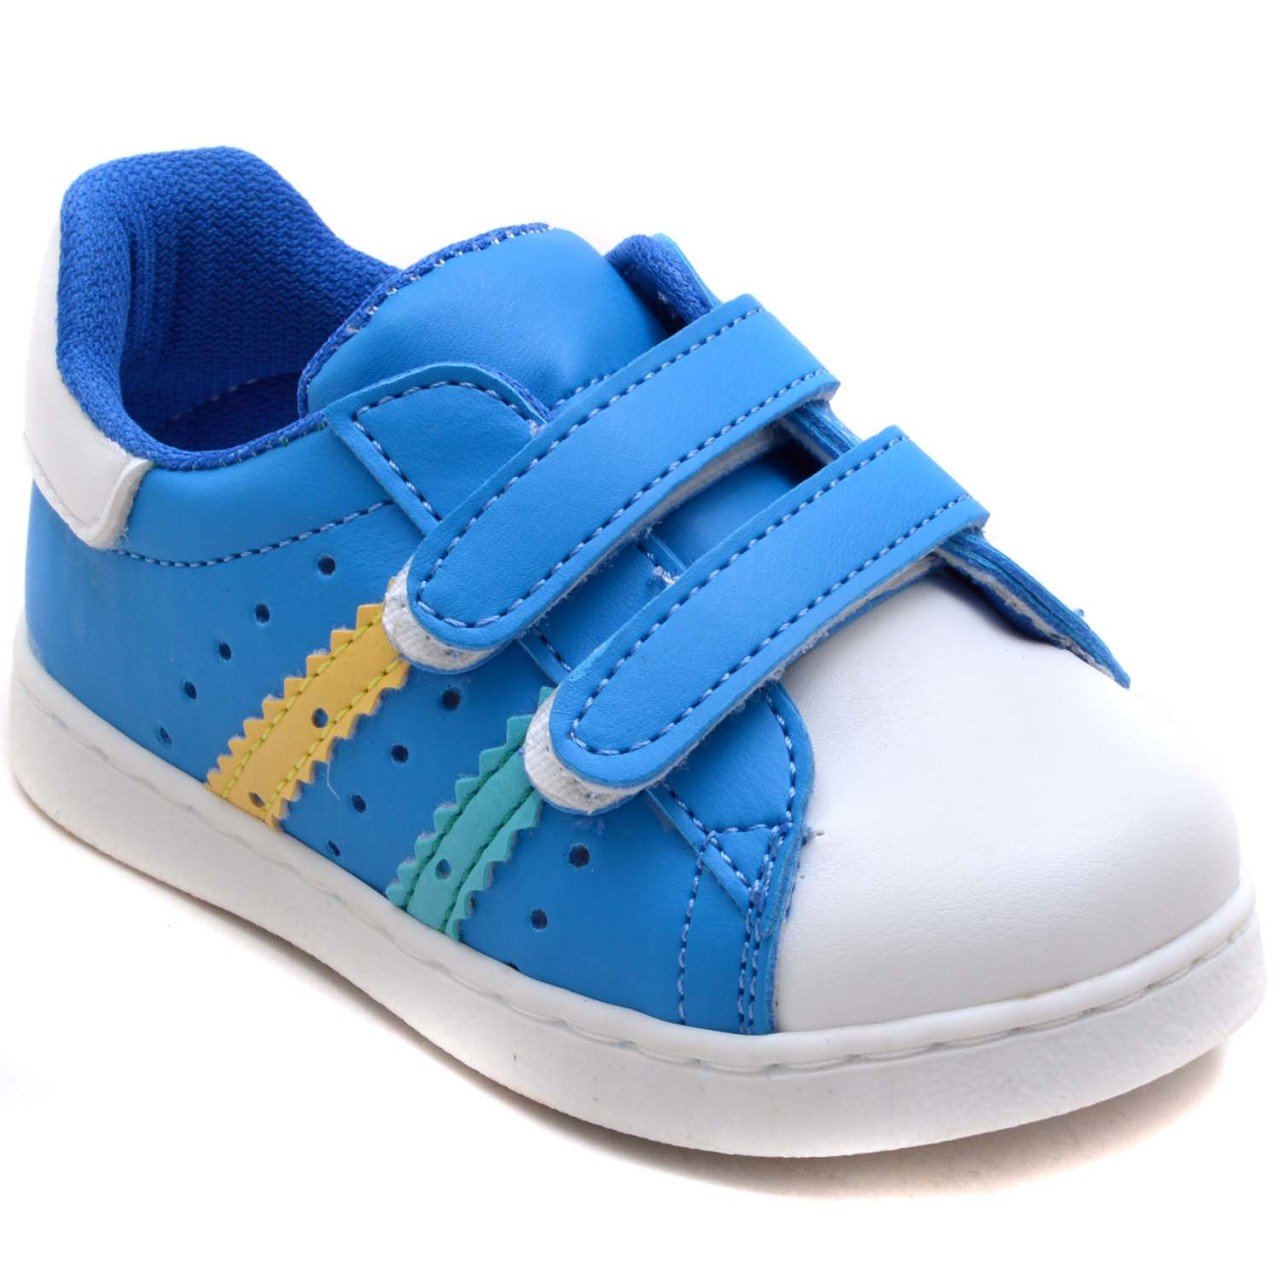 MDD-0 Çift Cırt Bebe Sneaker - Mavi